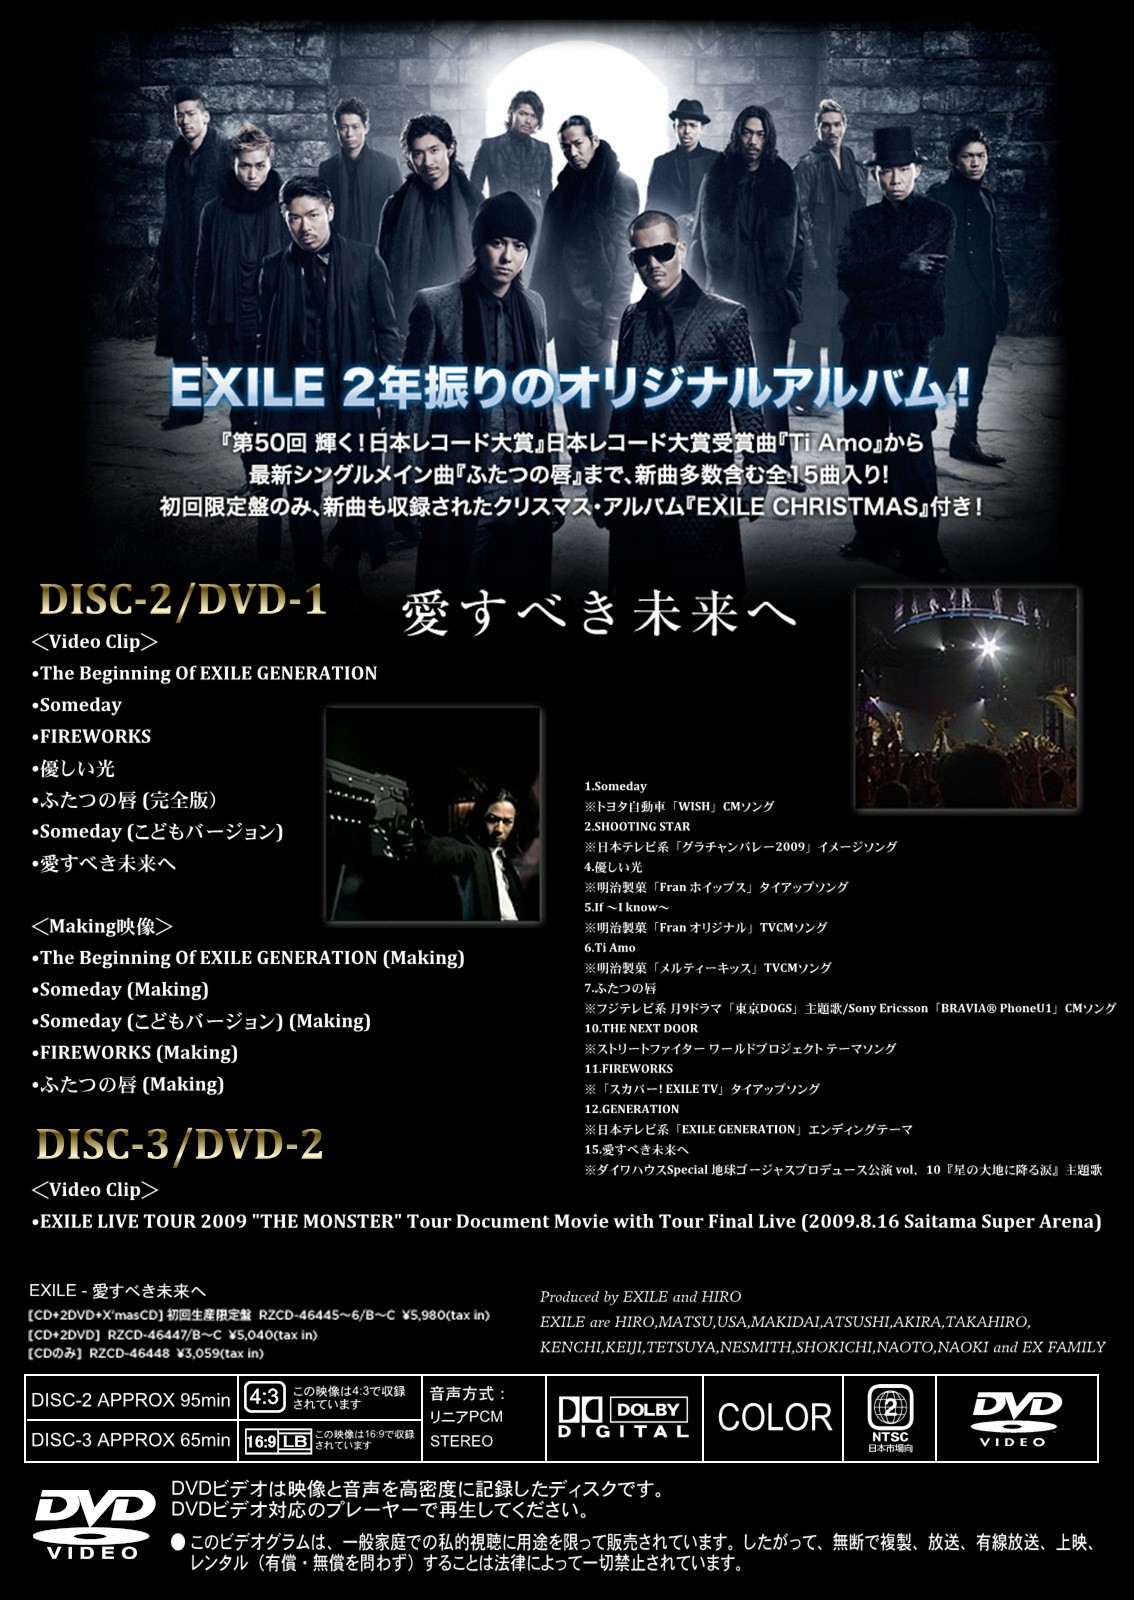 公式の店舗 EXILE CD 愛すべき未来へ 初回盤CD+DVD 4枚組